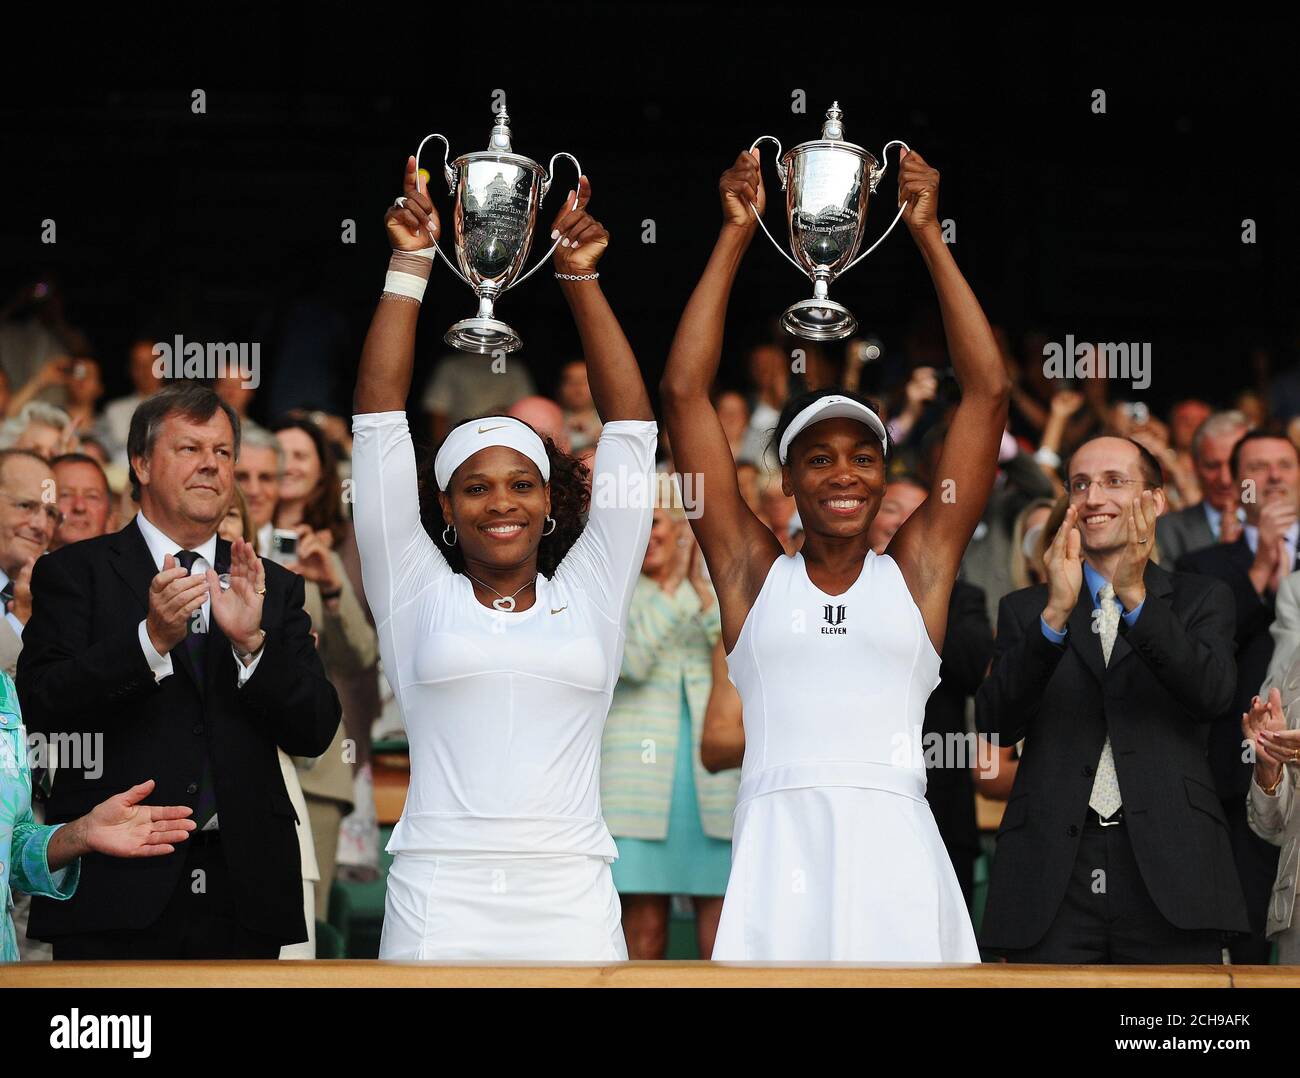 Serena Williams und Venus Williams gewinnen das Damendoppel-Finale. Wimbledon Tennis Championships, London. 4/7/2009 Bildnachweis: © Mark Pain /Alamy Stockfoto